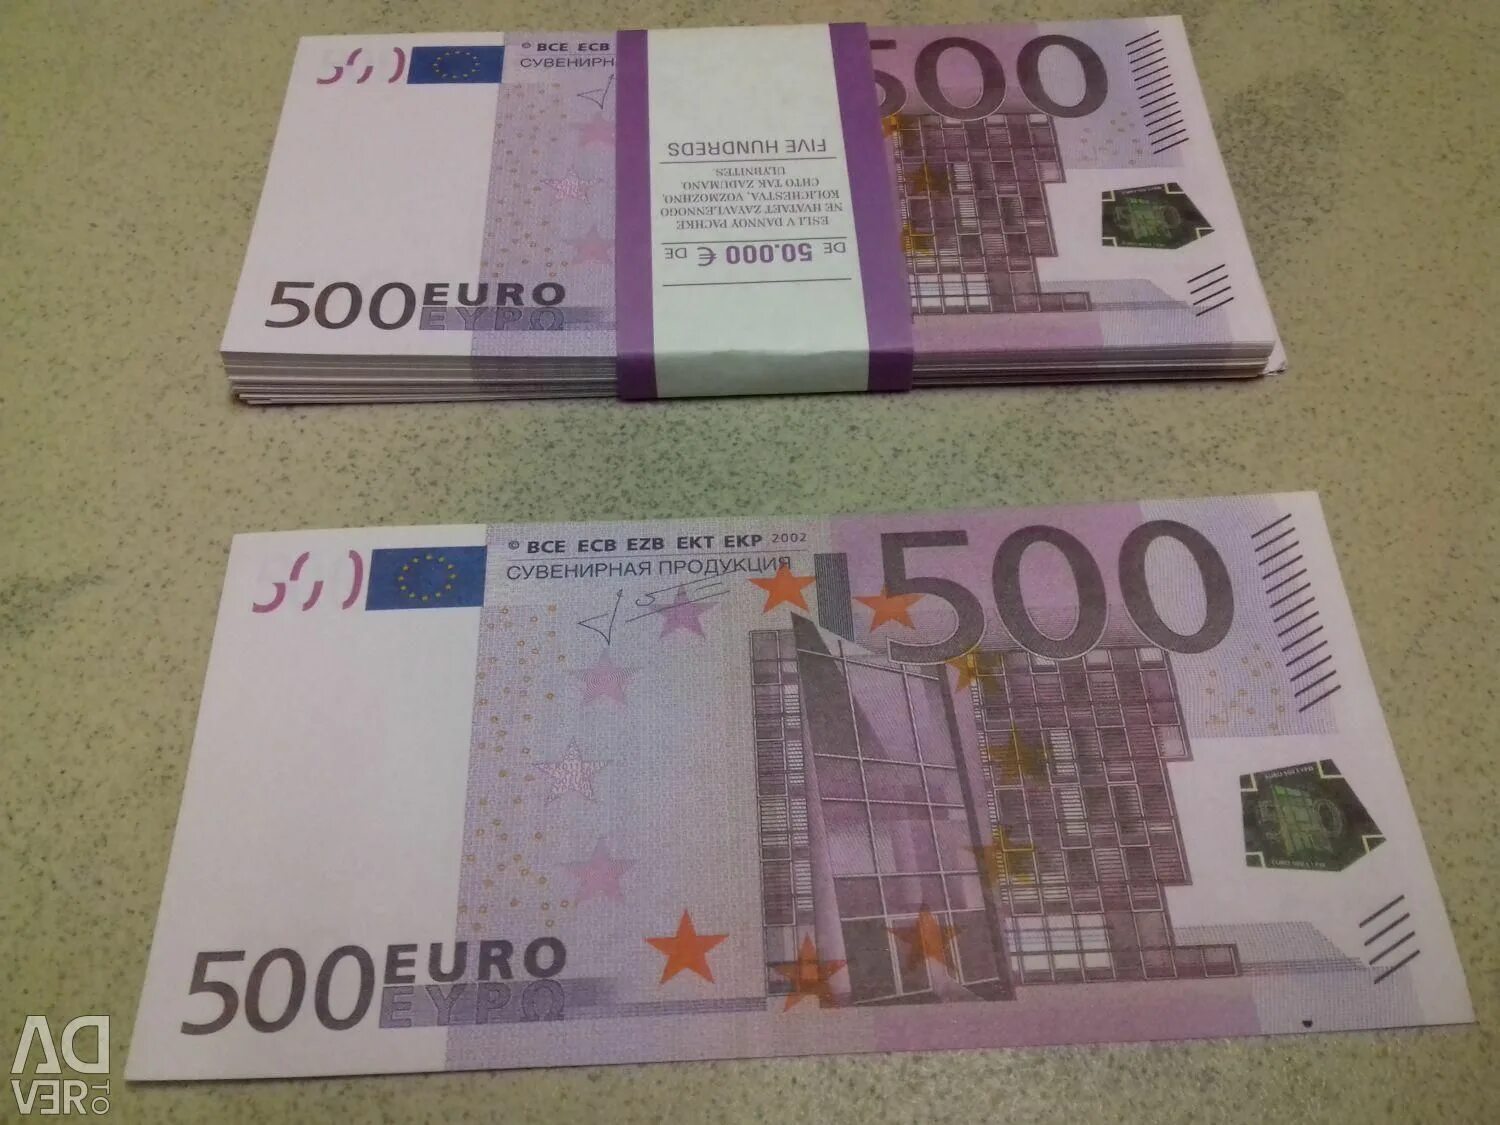 80 евро сколько в рублях. Пачка купюр 500 евро. 500 Евро банка приколов. 500 Евро в рублях. 500 Евро купюра сувенирная продукция.